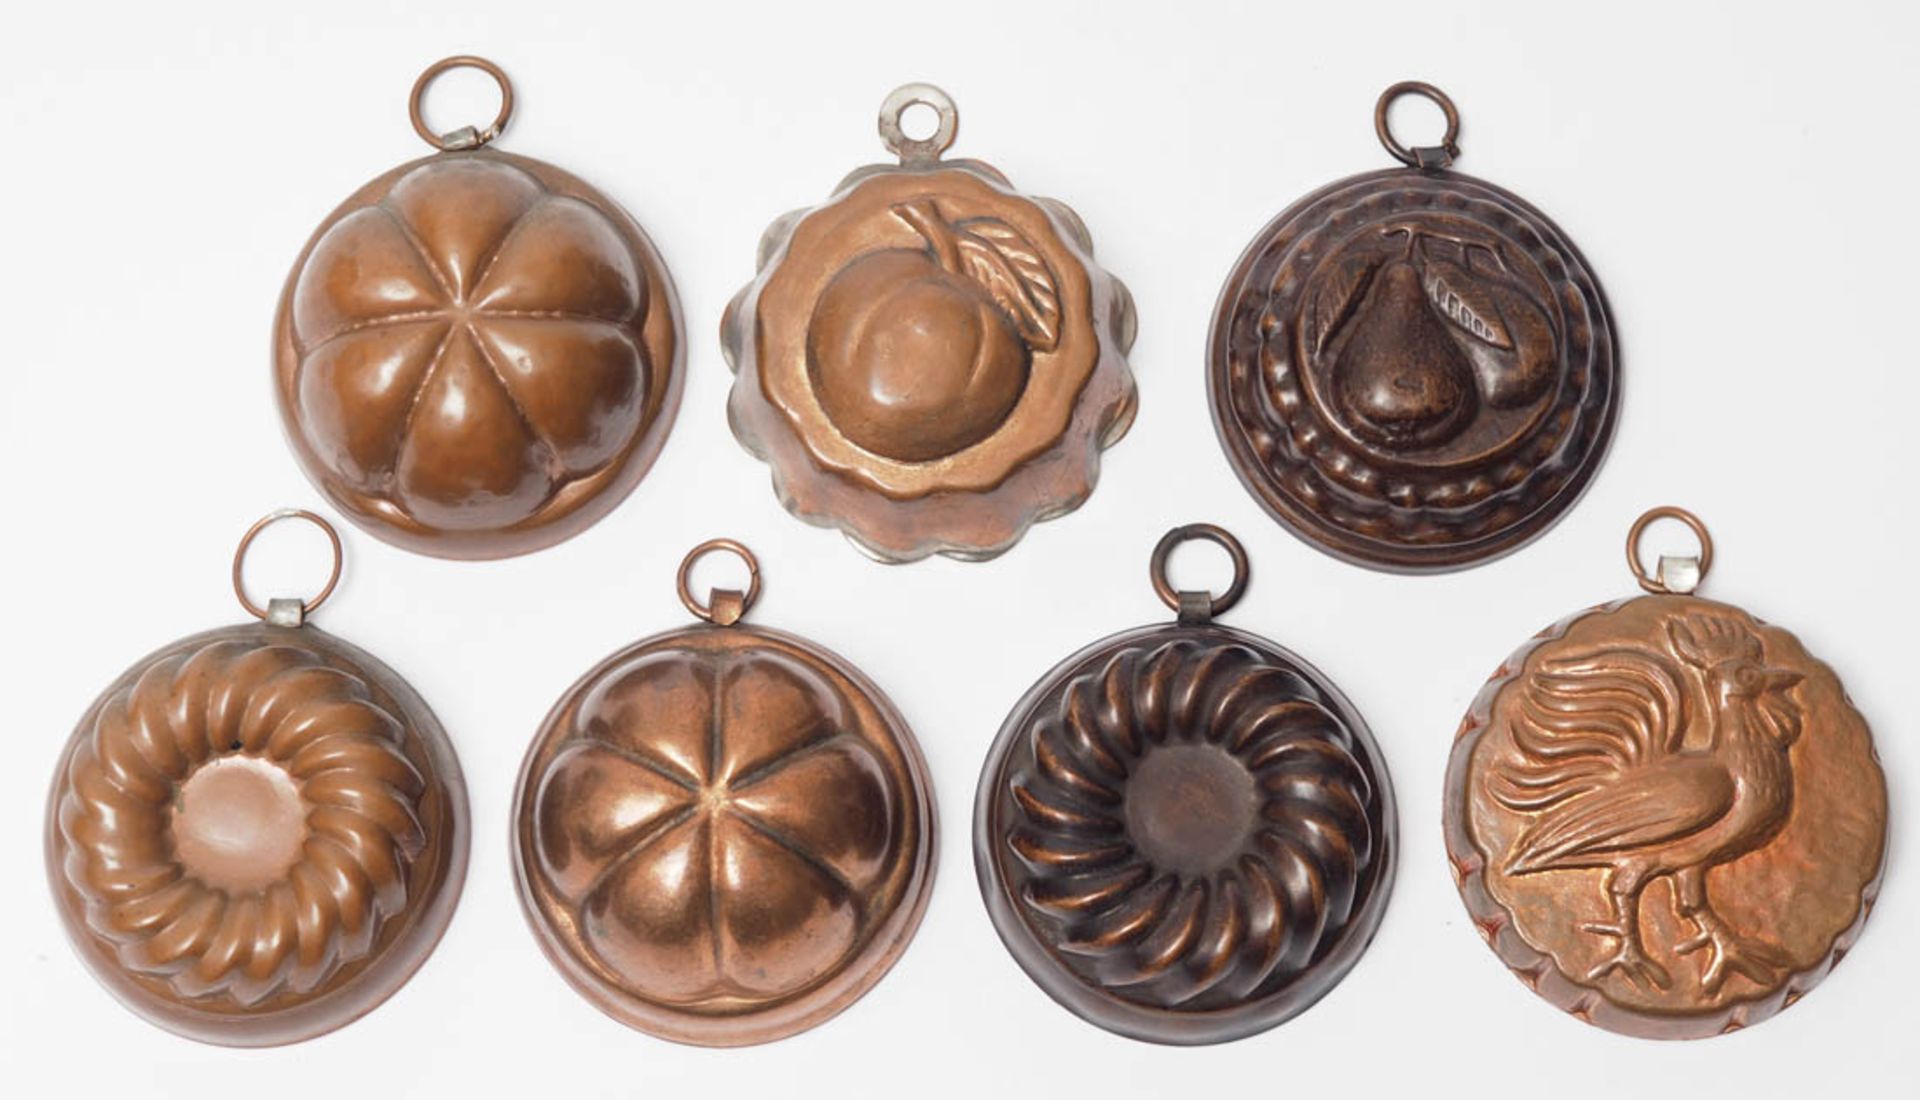 Sieben Puppenstuben-Kupferförmchen Unterschiedliche Formen und Größen. Kupfer, innen verzinnt.